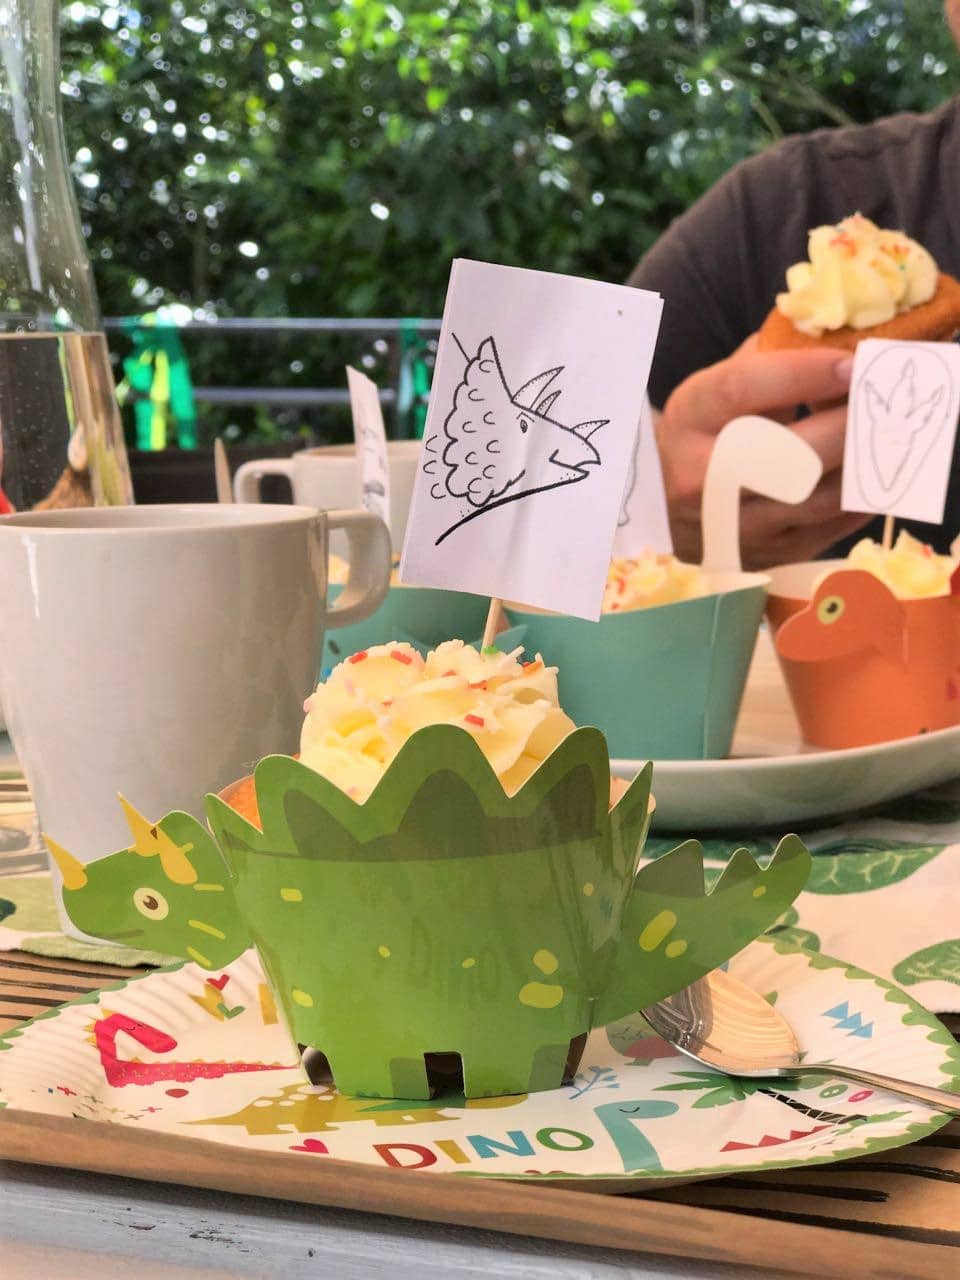 Perfekter Cupcake: Muffin mit Zitronen-Frischkäse-Frosting, Zuckerstreuseln und Dinosaurier-Banderole. - Mehr Infos zur Dino-Party auf Mamaskind.de